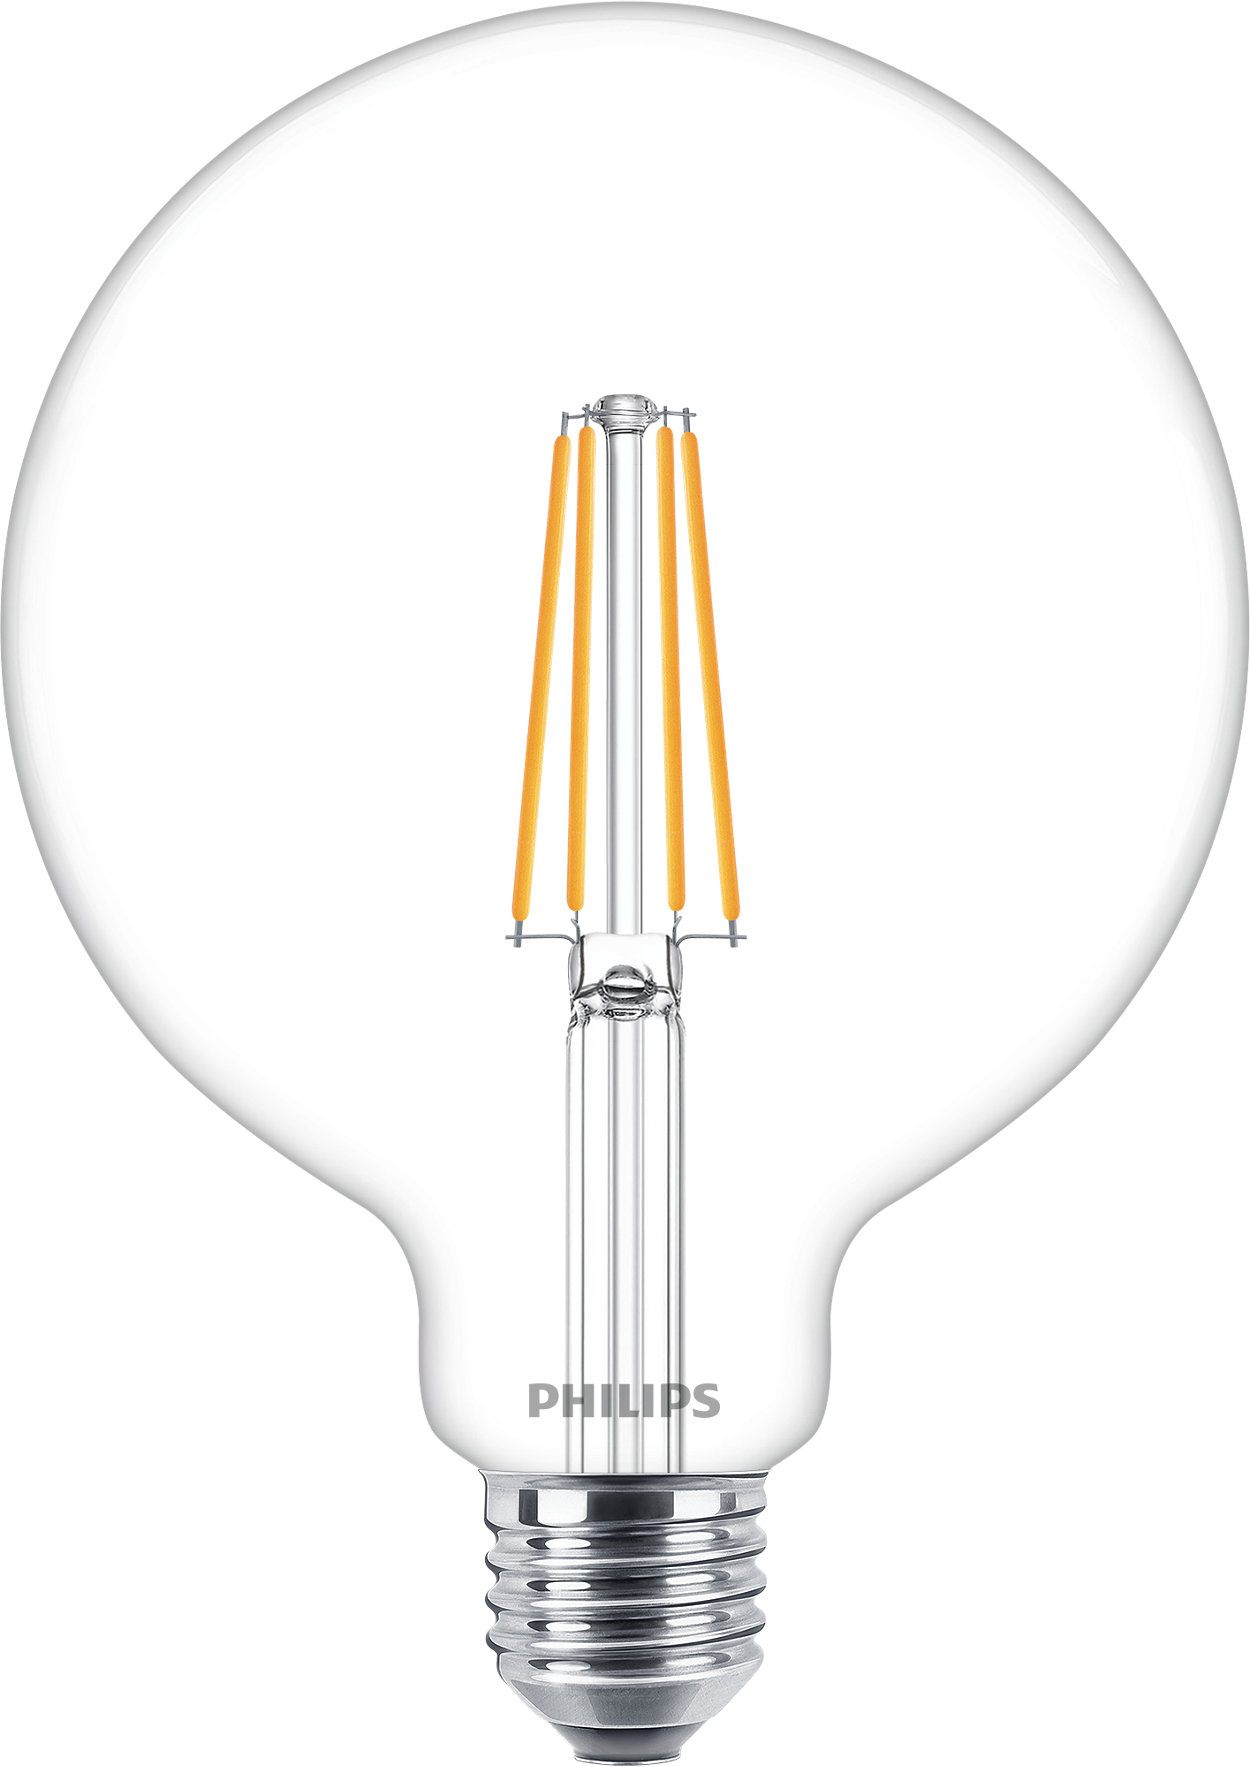 Dimbara LED-ljuskällor i glas med lägre energiförbrukning